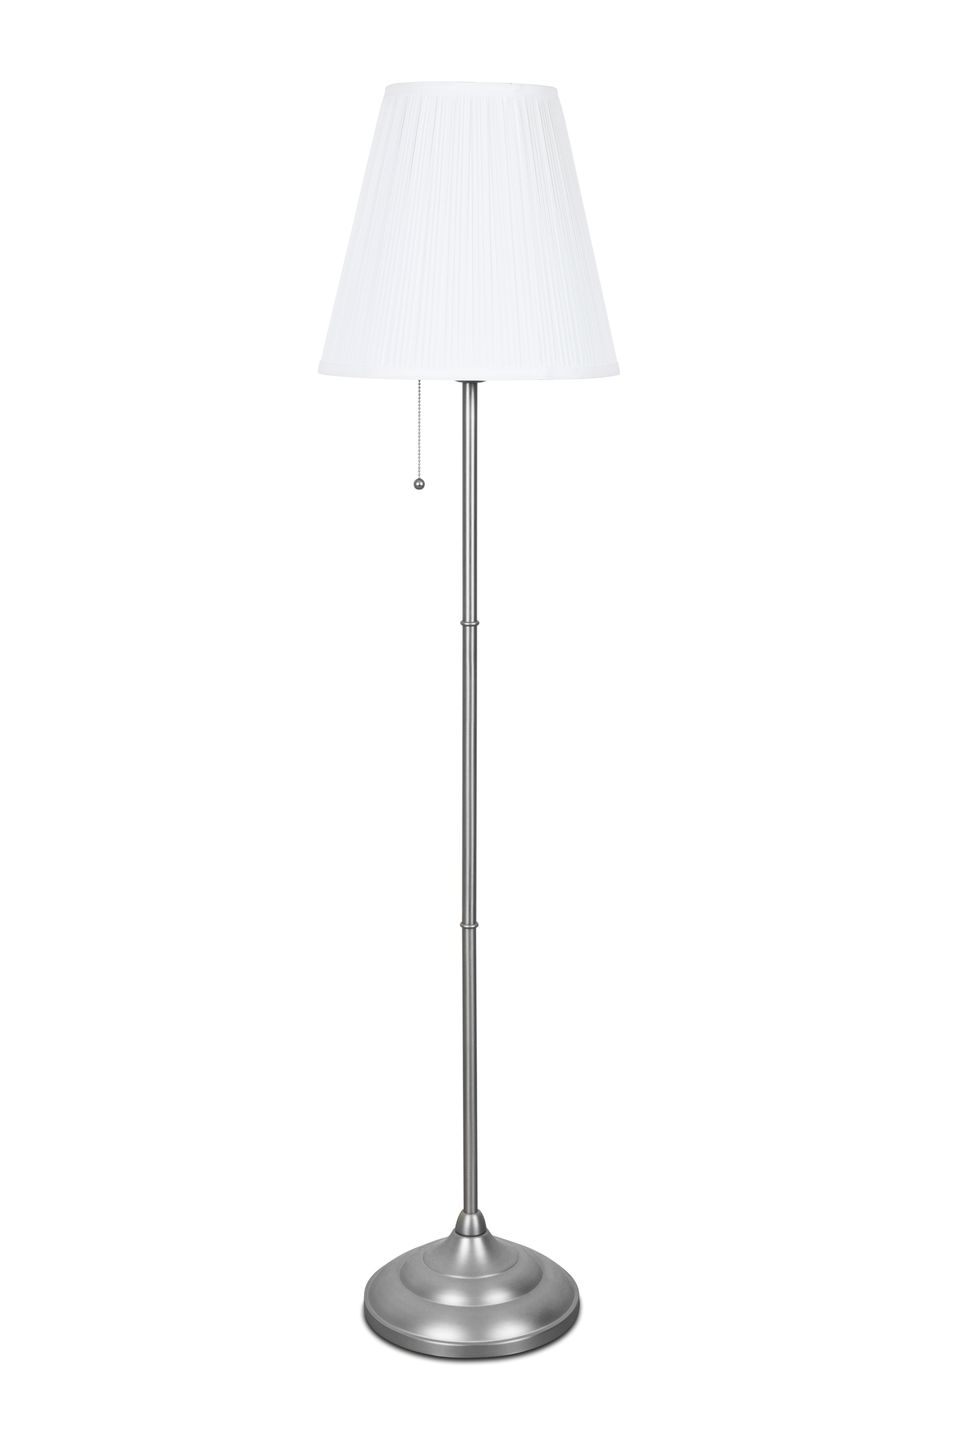 Different Types Of Floor Lamps regarding size 960 X 1440